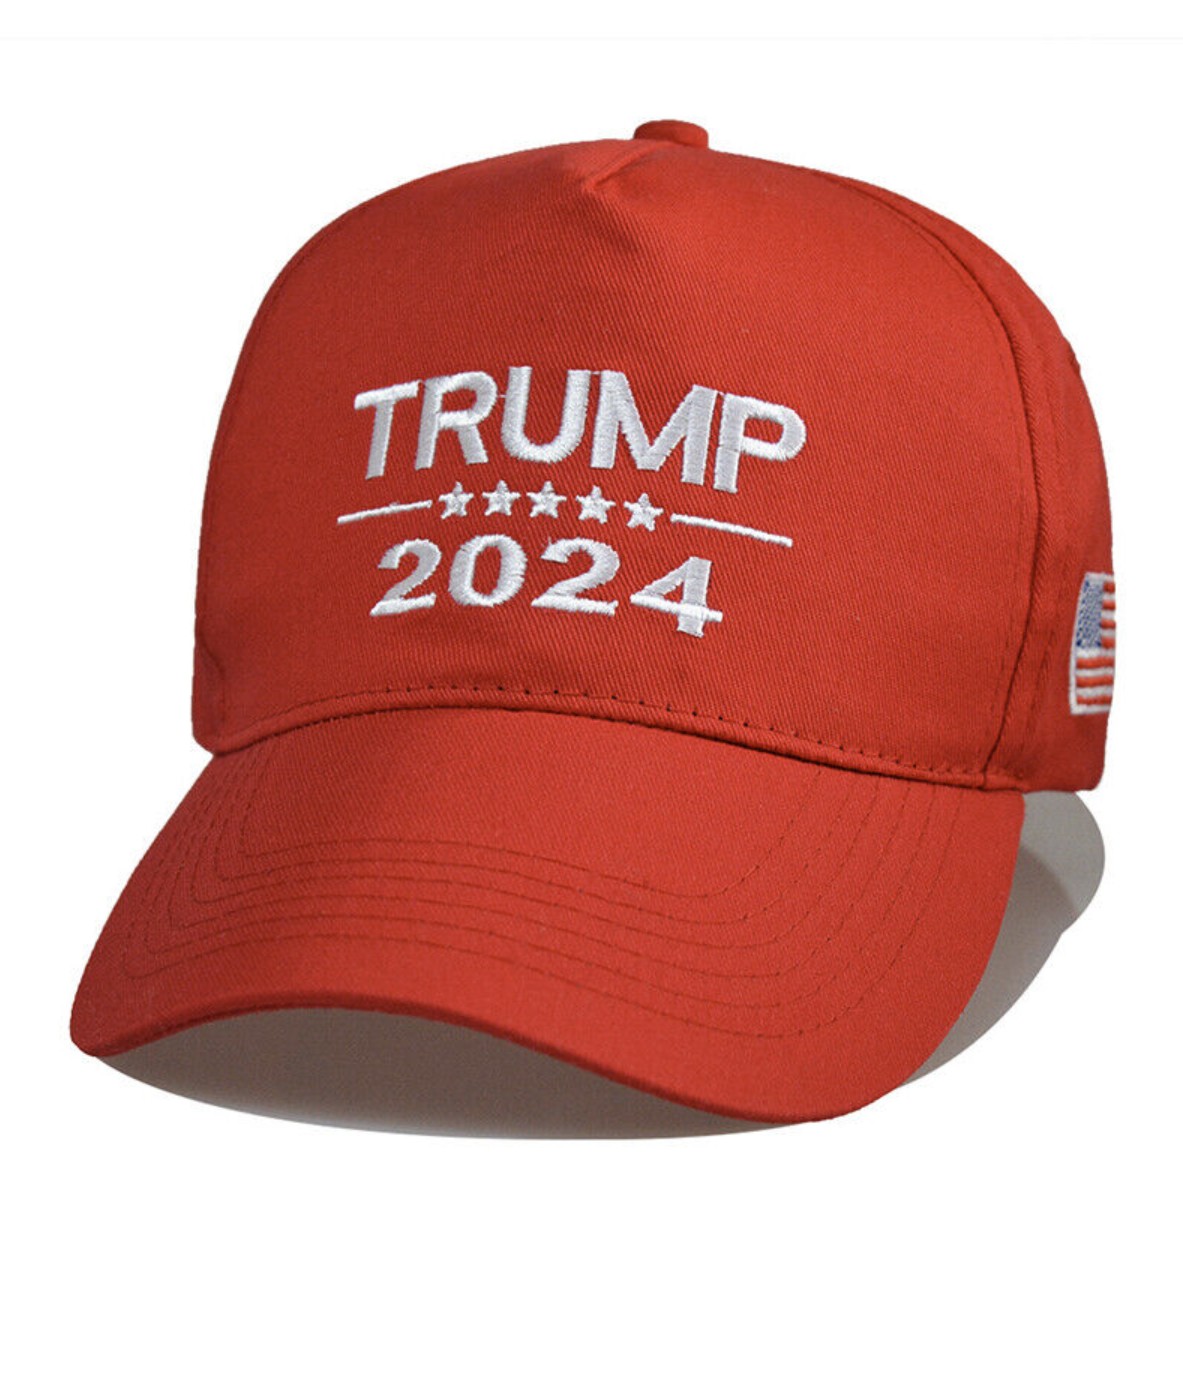 Trump 2024 Hat Maga Cap Baseball